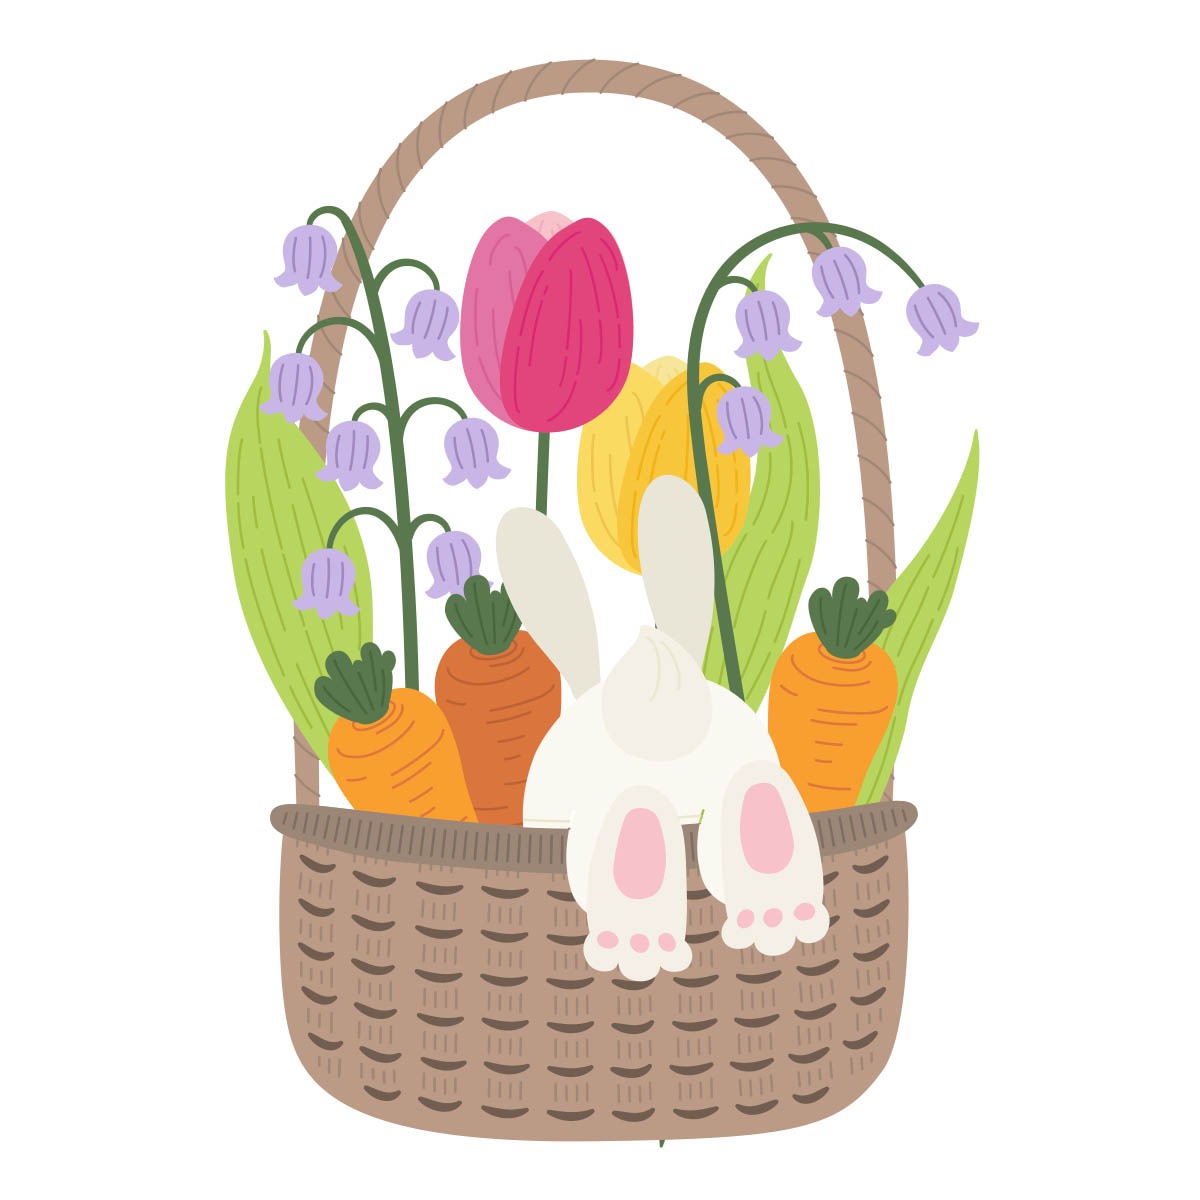 Spellbinders | Floral Bunny Basket